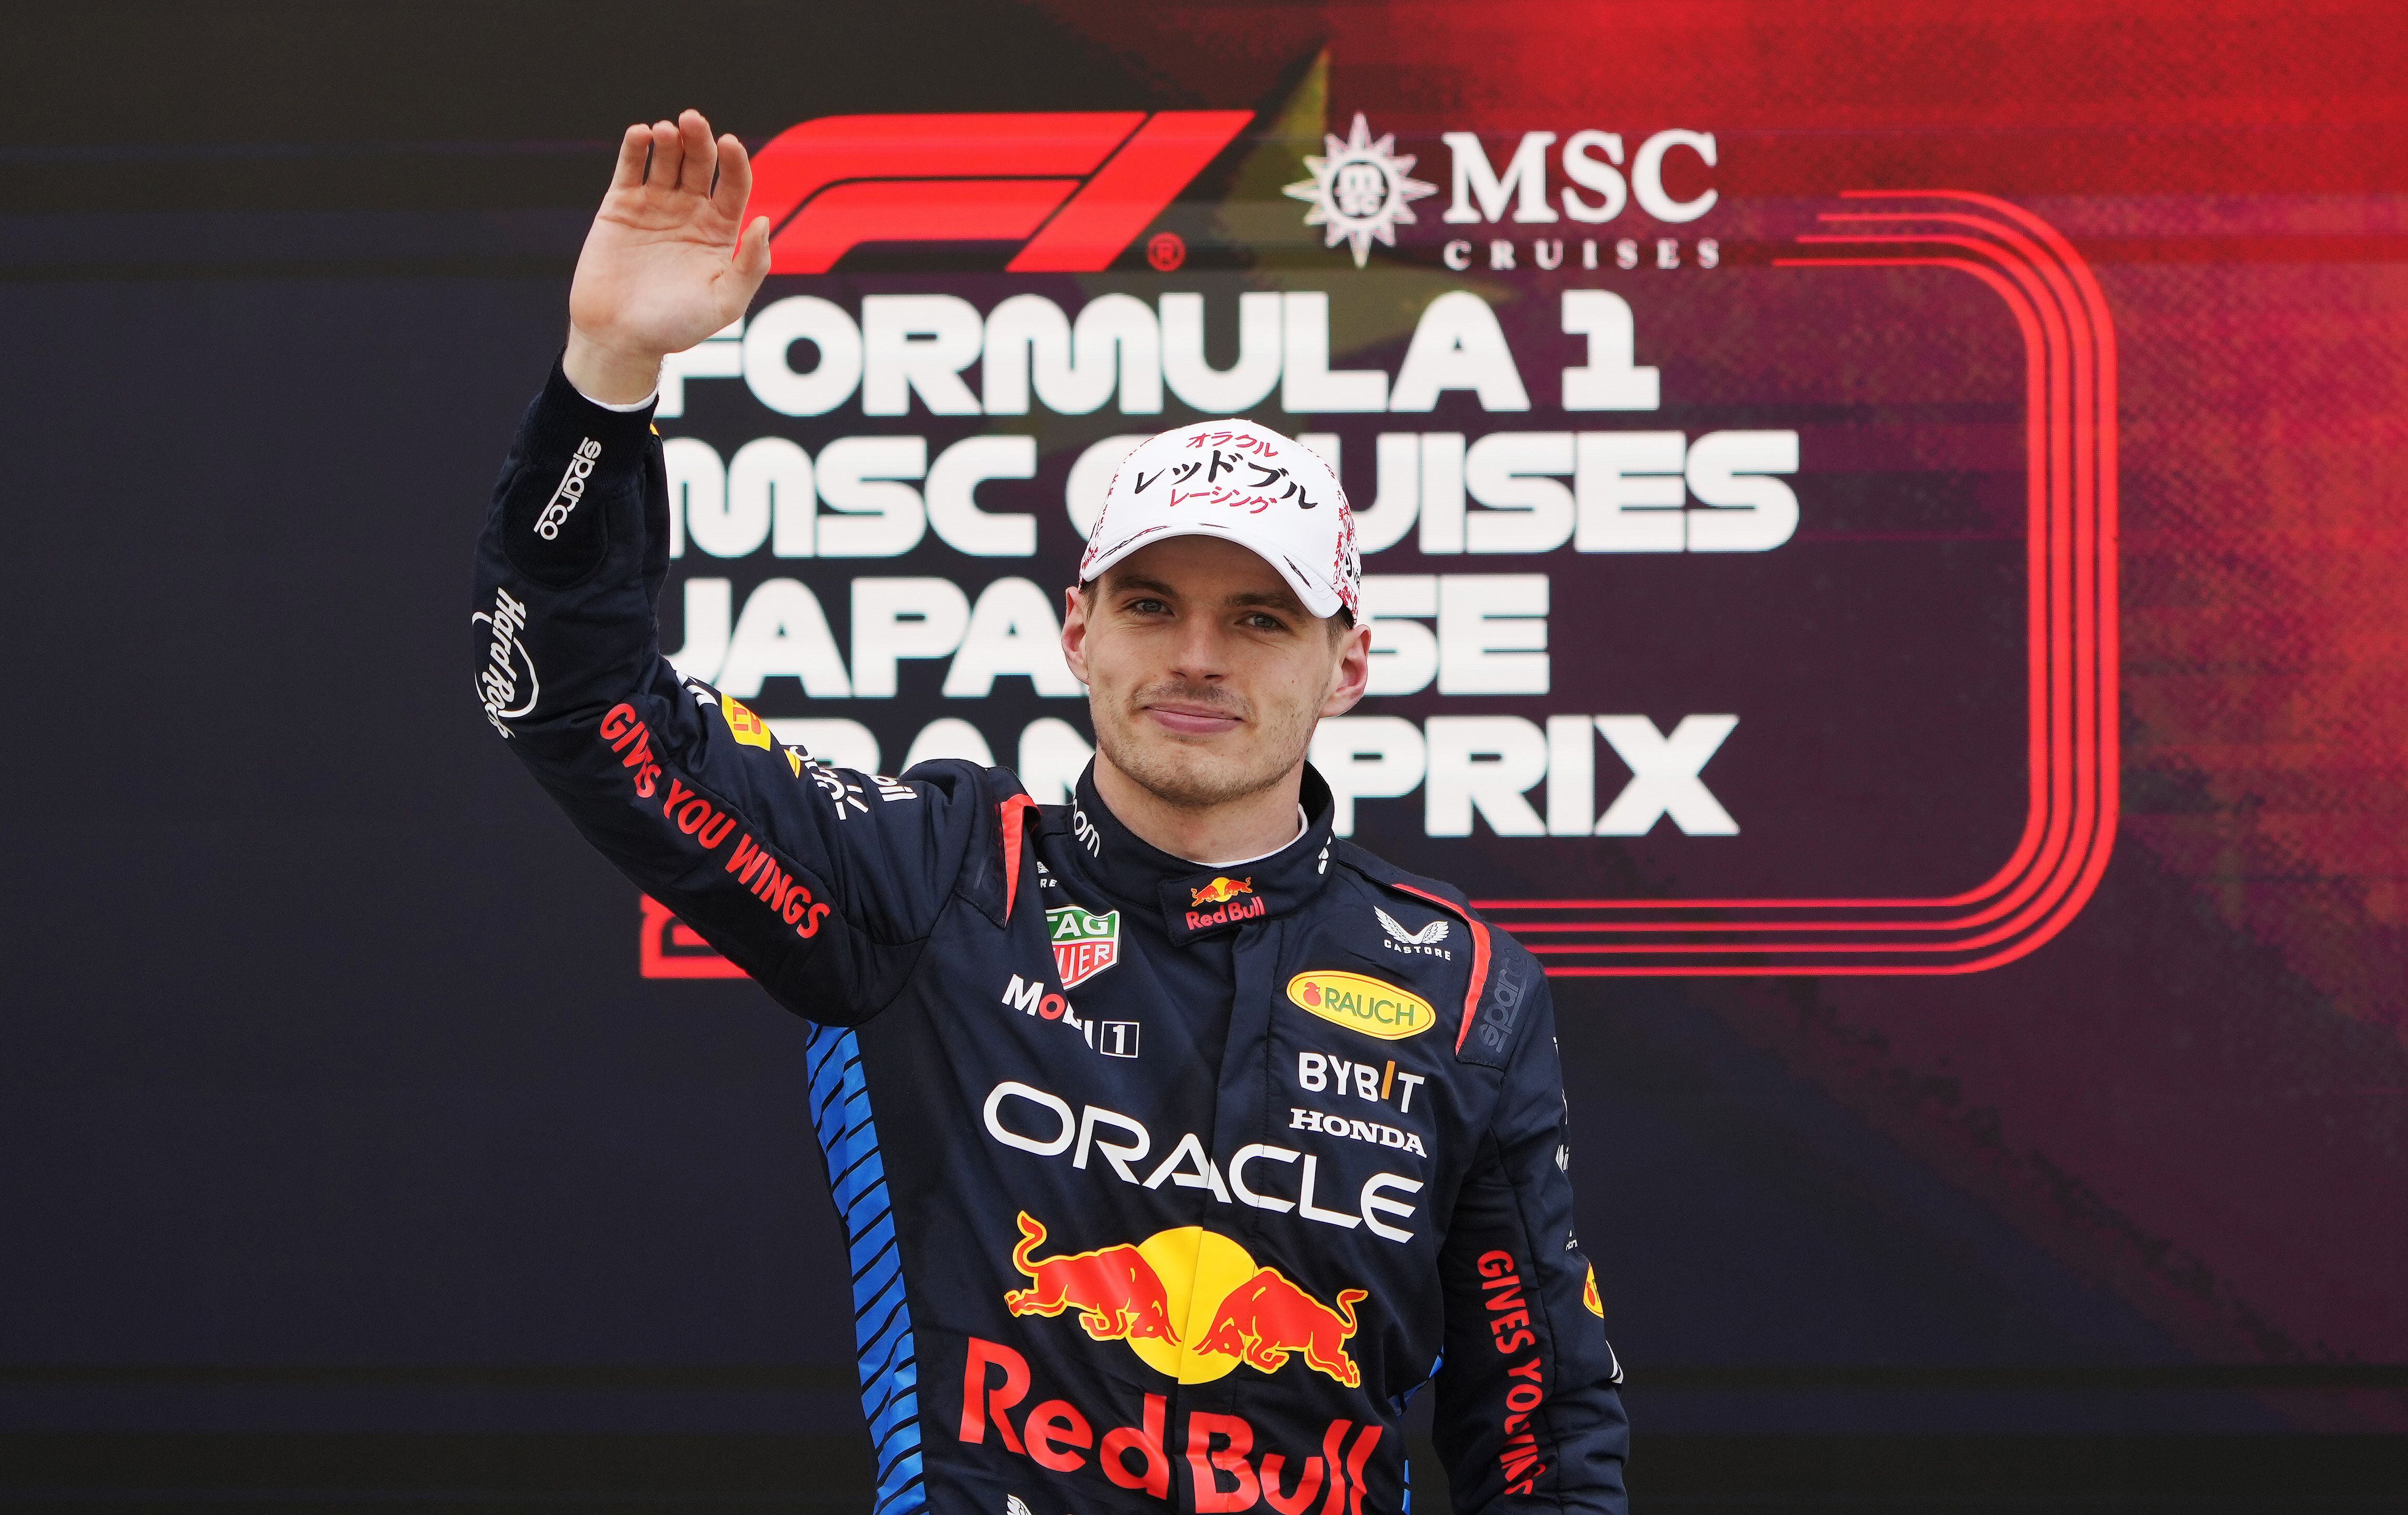 Max Verstappen, piloto de Red Bull, se llevó el primer lugar del Gran Premio de Japón. (Foto: EFE)